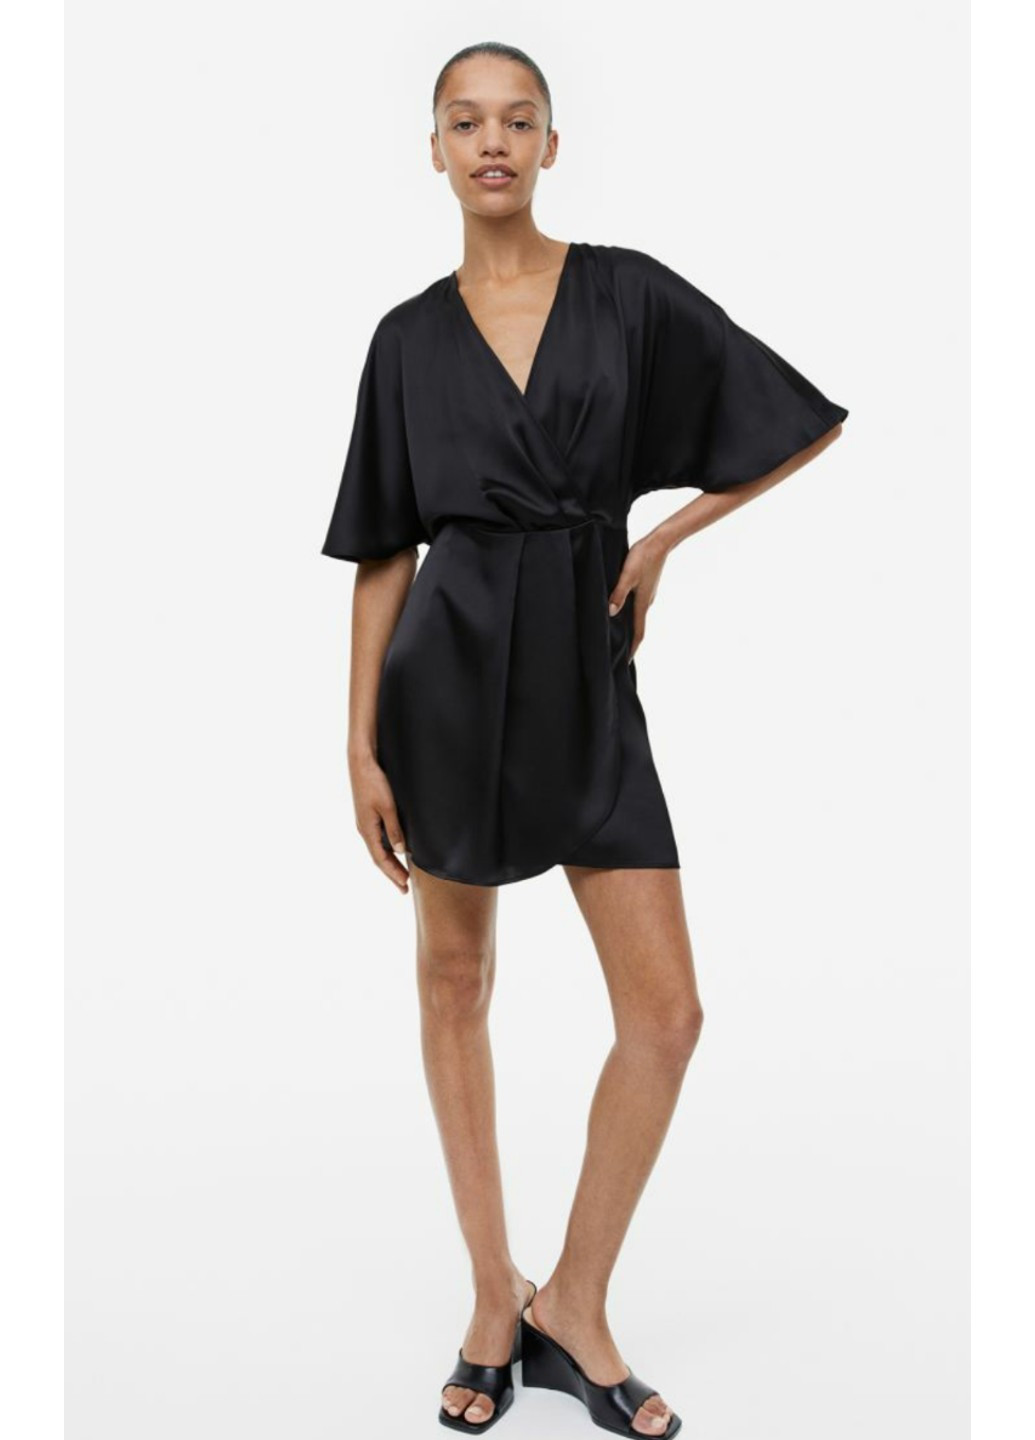 Черное коктейльное женское атласное платье н&м (55859) xs черное H&M